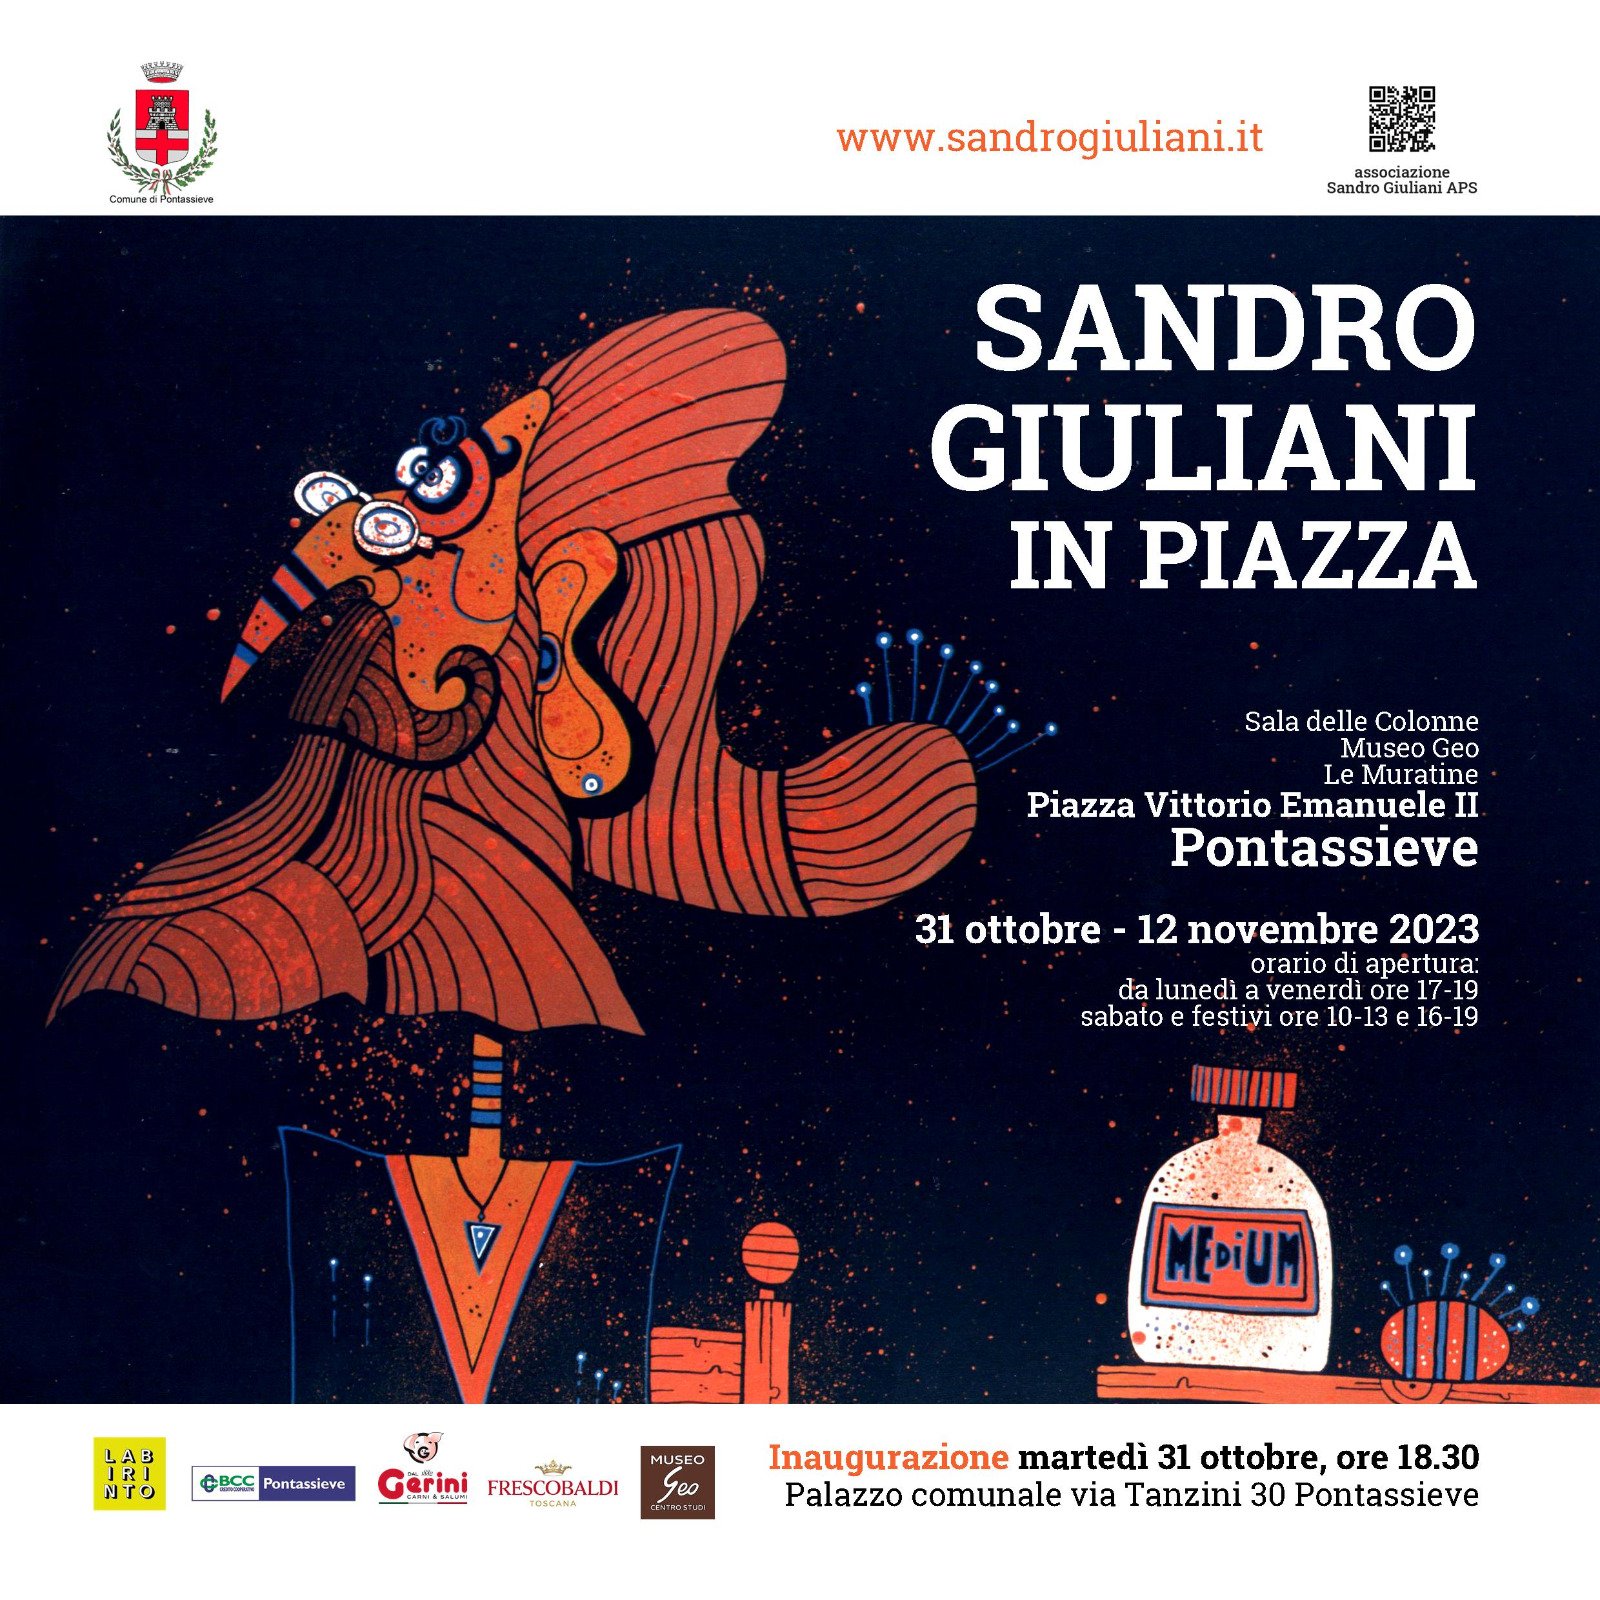 Sandro Giuliani in Piazza: Mostra retrospettiva dedicata al maestro Sandro Giuliani